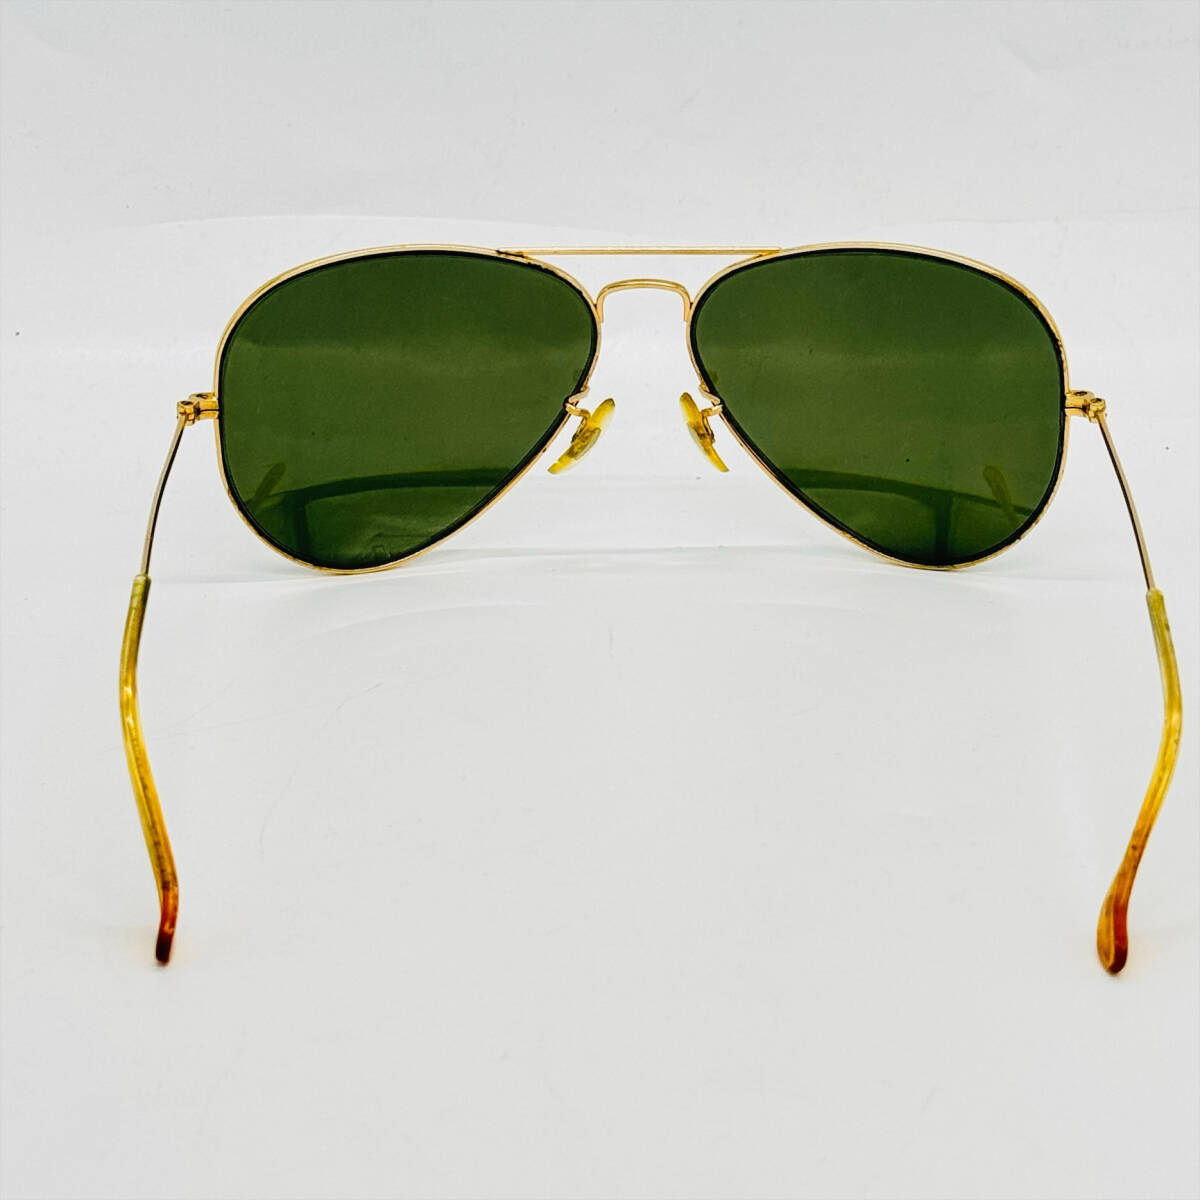 Ray-Ban RayBan солнцезащитные очки Teardrop Vintage USA зеленый линзы с футляром 15074 1 иен лот Gold цвет симпатичный 